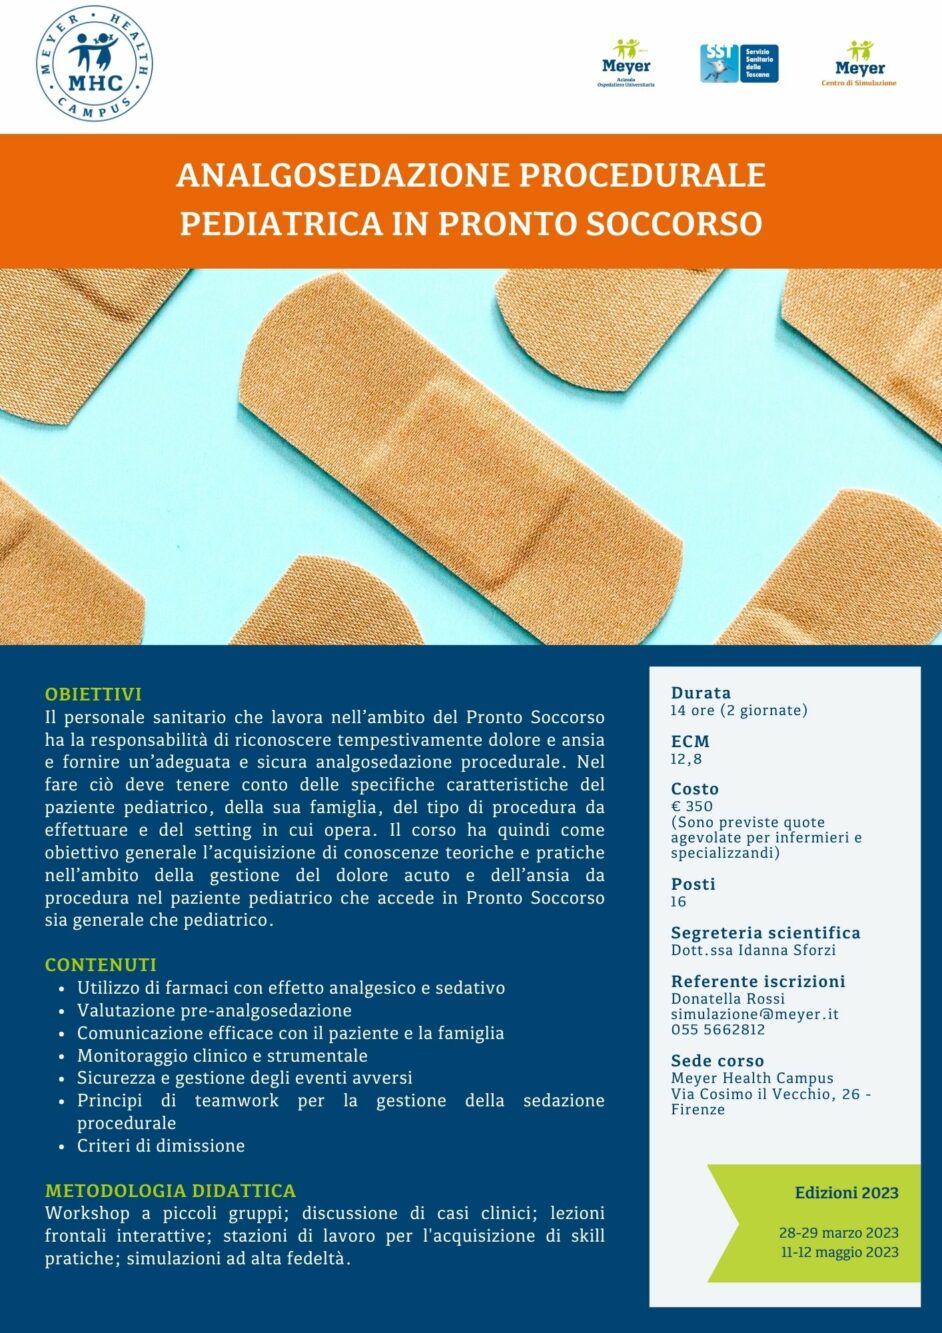 Analgosedazione procedurale pediatrica in Pronto Soccorso (28-29 marzo 2023)